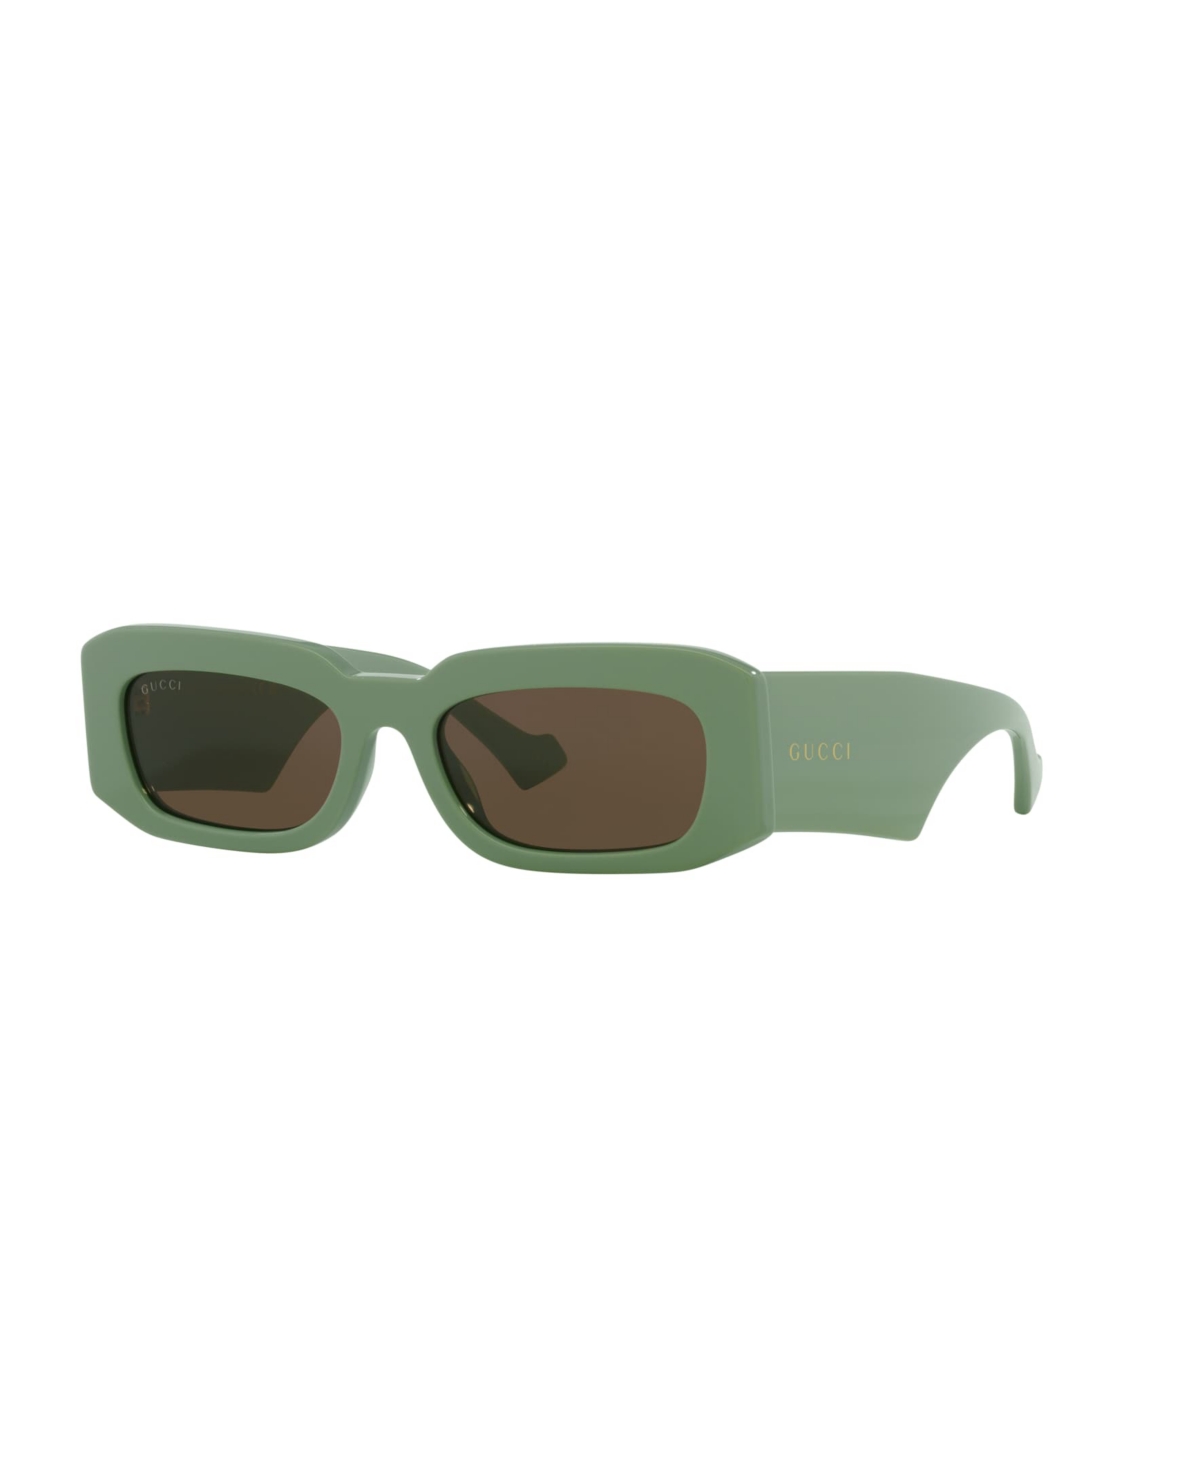 Gucci Men's Sunglasses, Gg1426s In Green